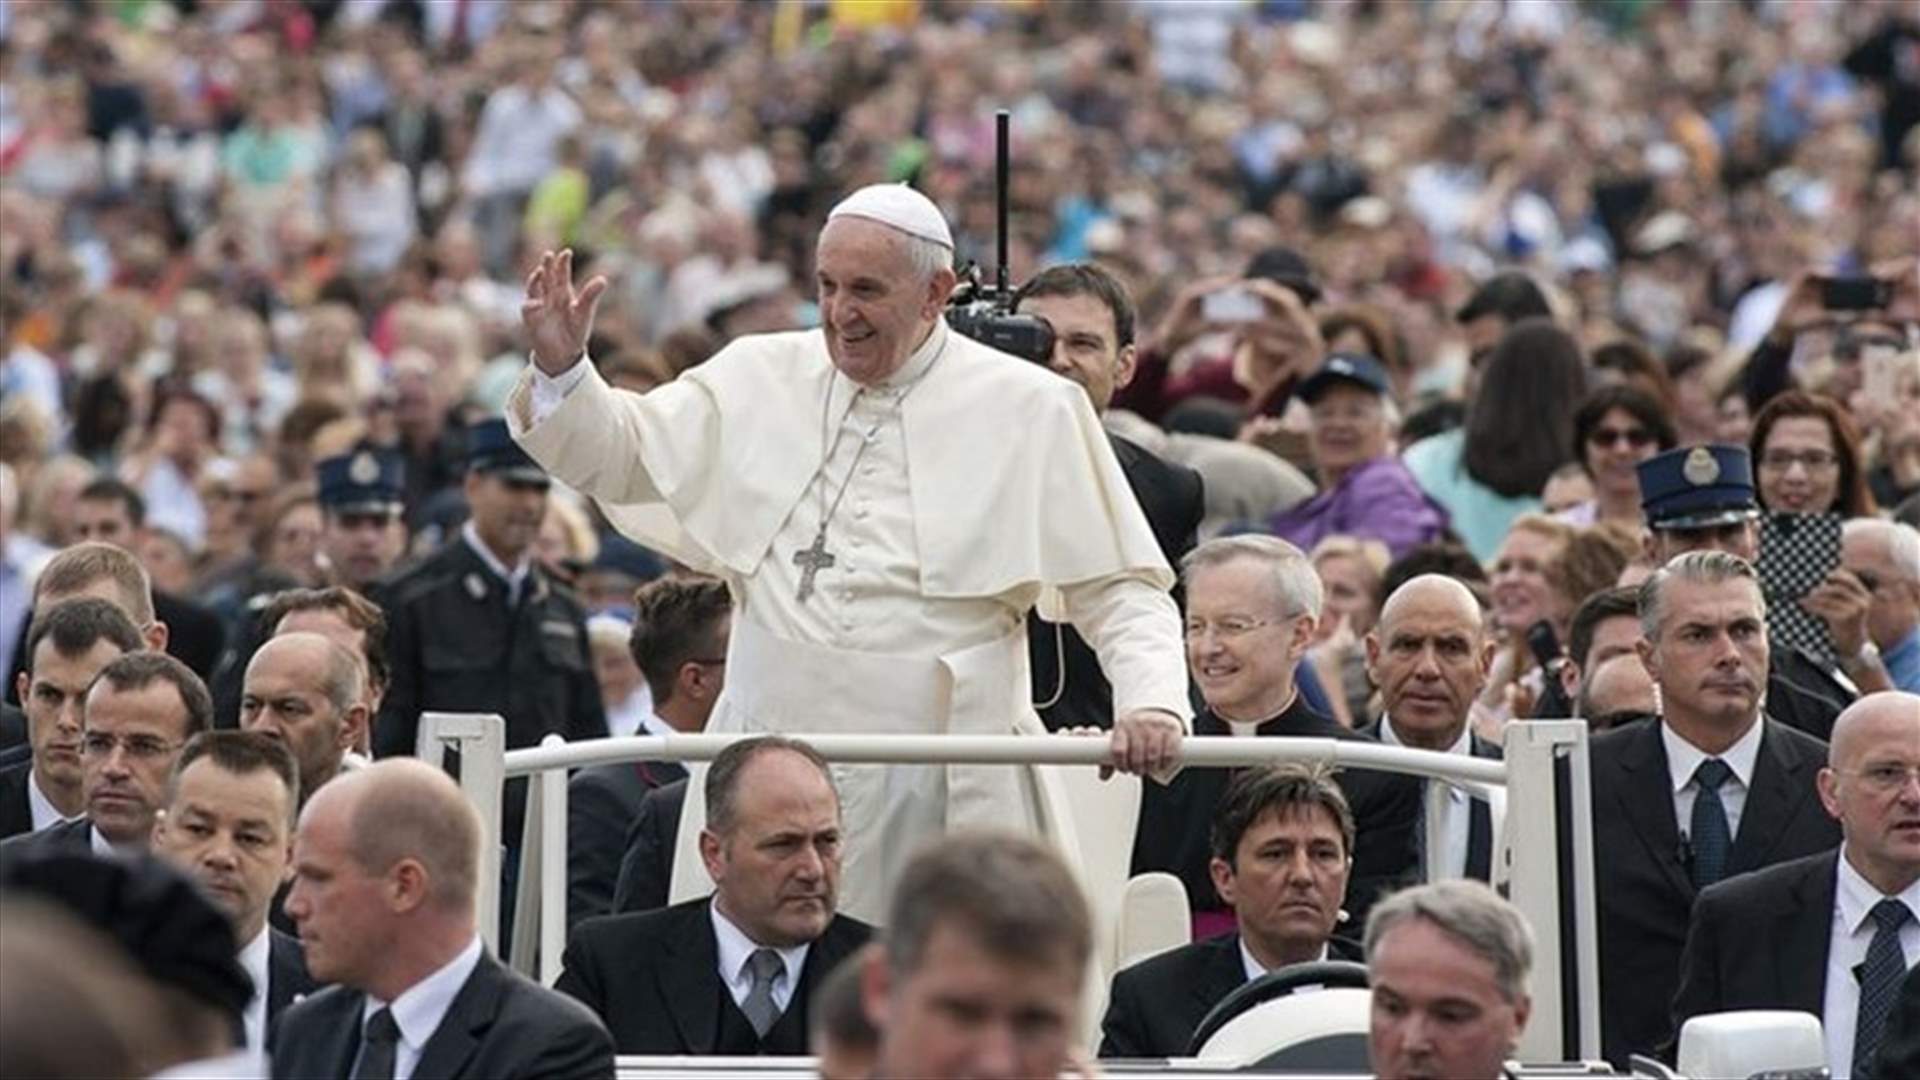 بالفيديو- أثناء مروره بالسيارة البابوية... الاعتداء على البابا فرنسيس في تشيلي